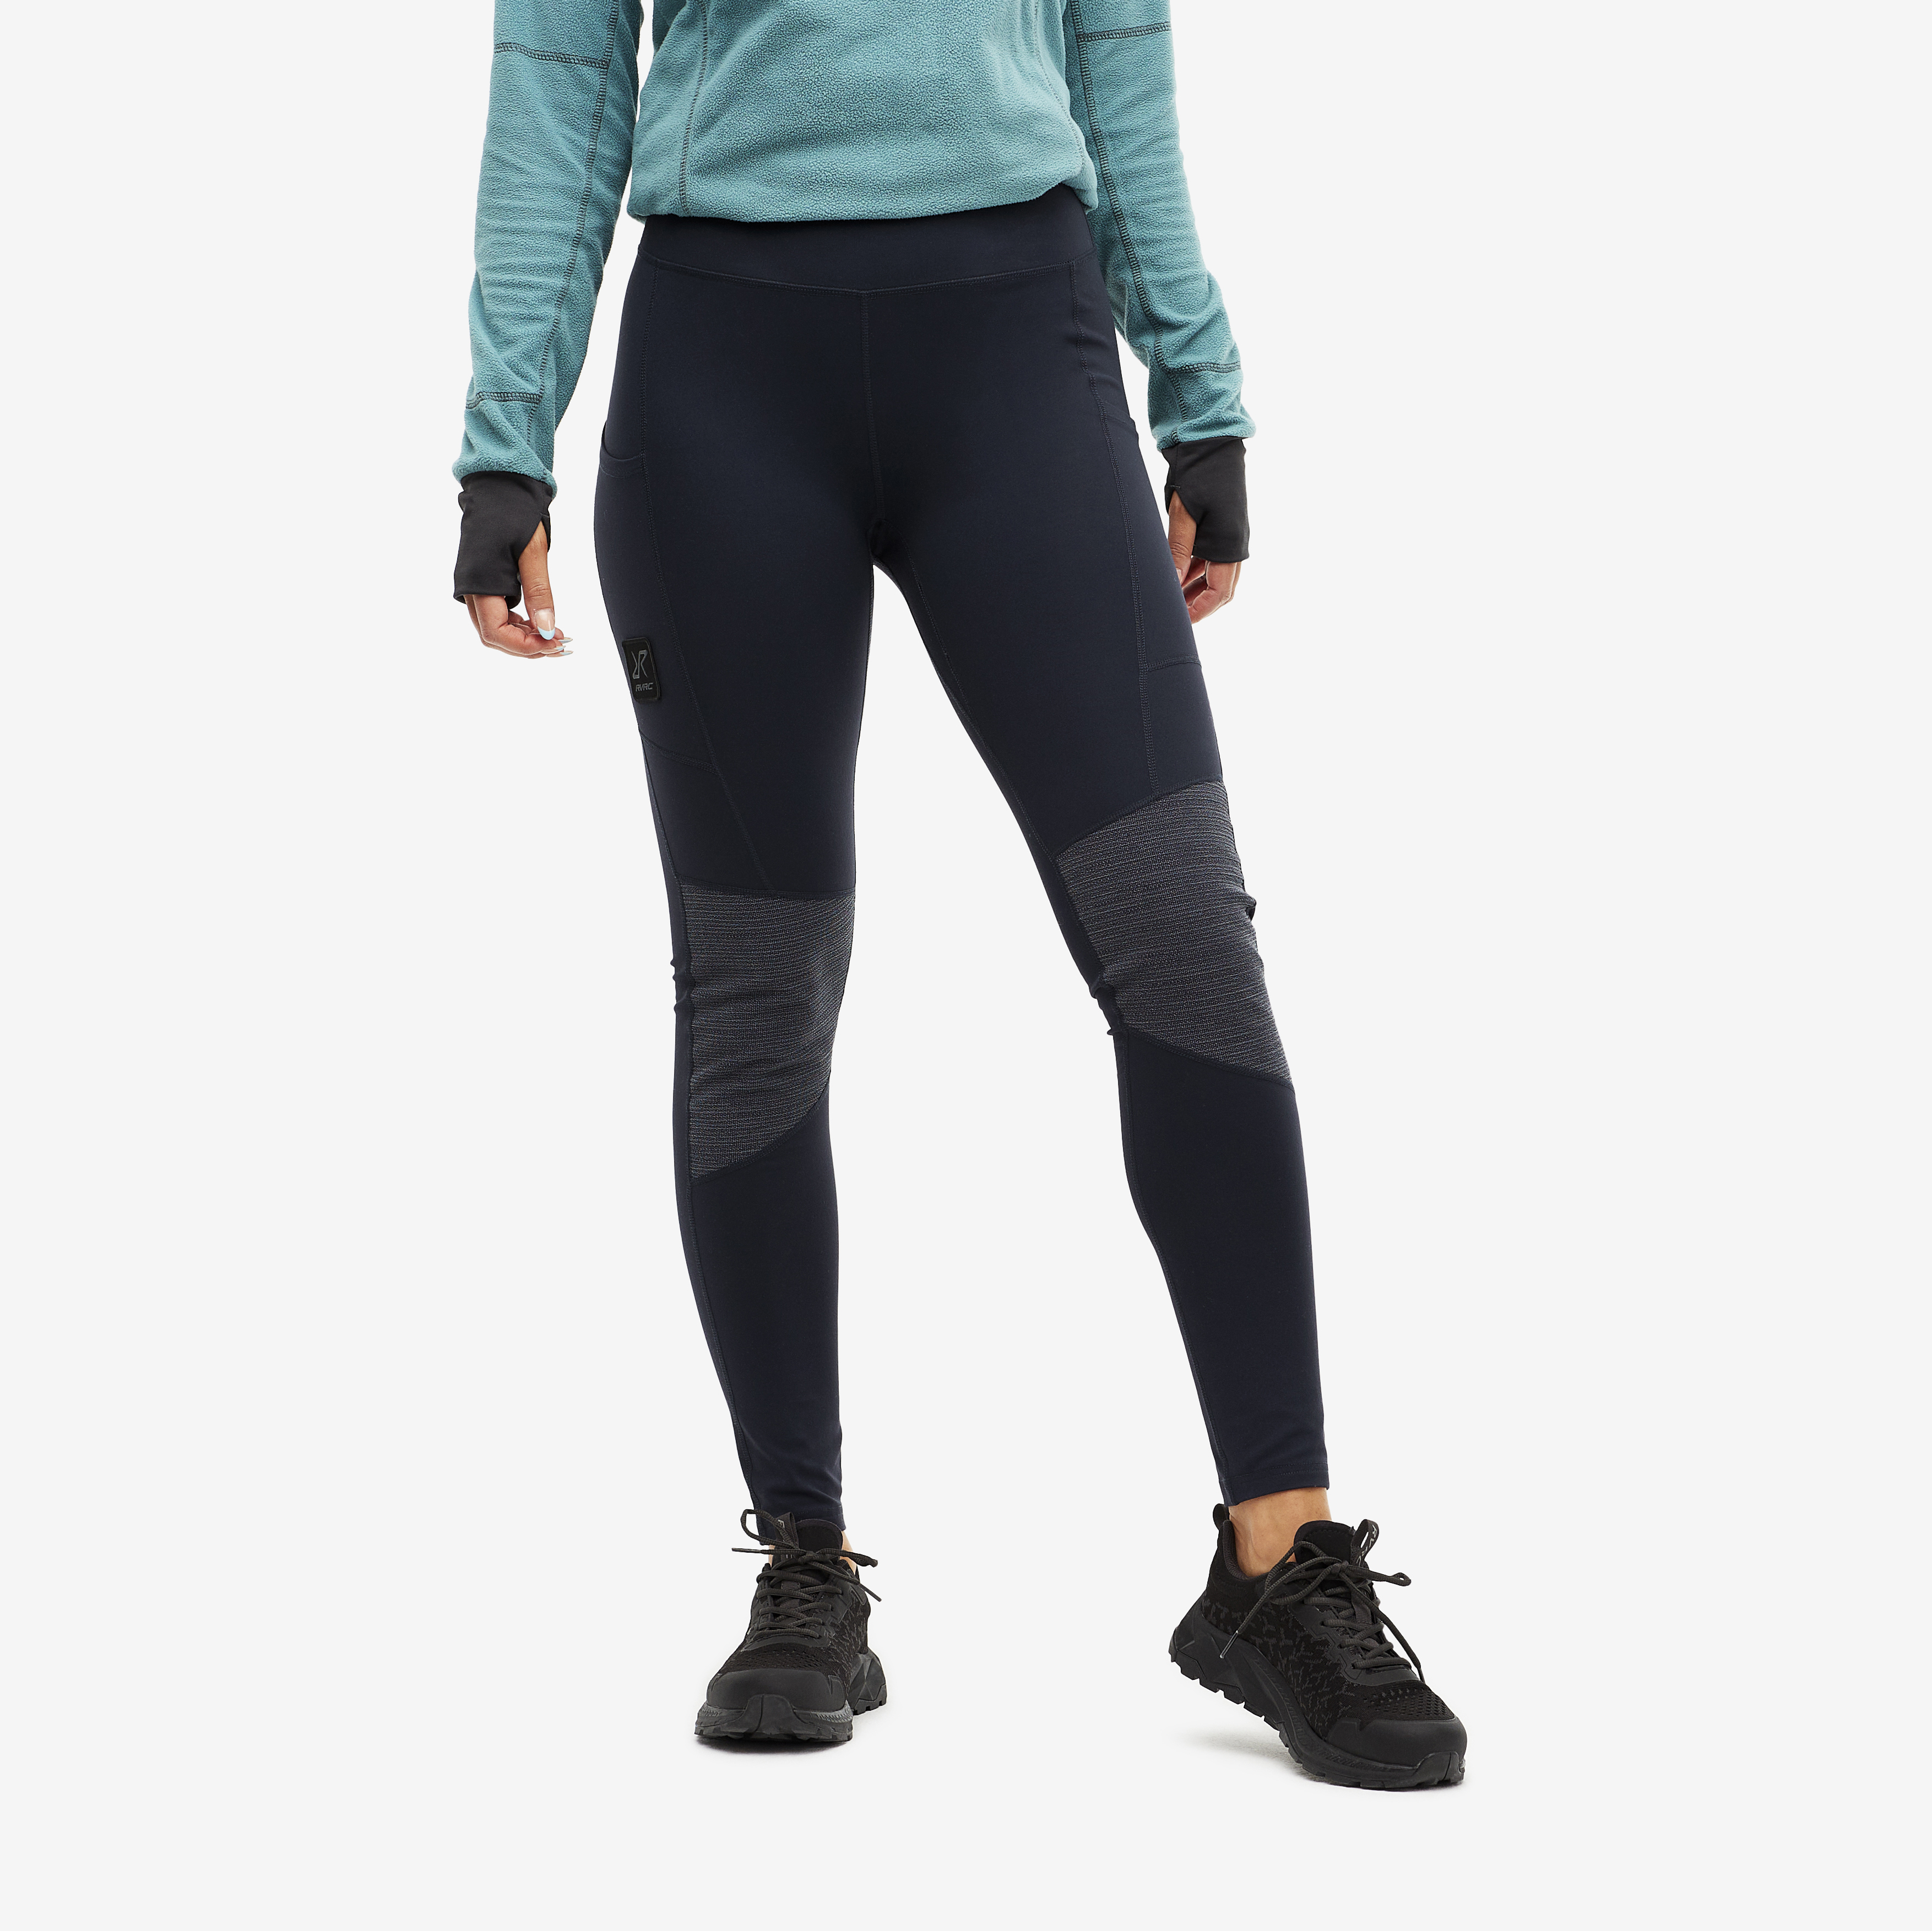 Women's leggings for outdoor & hiking